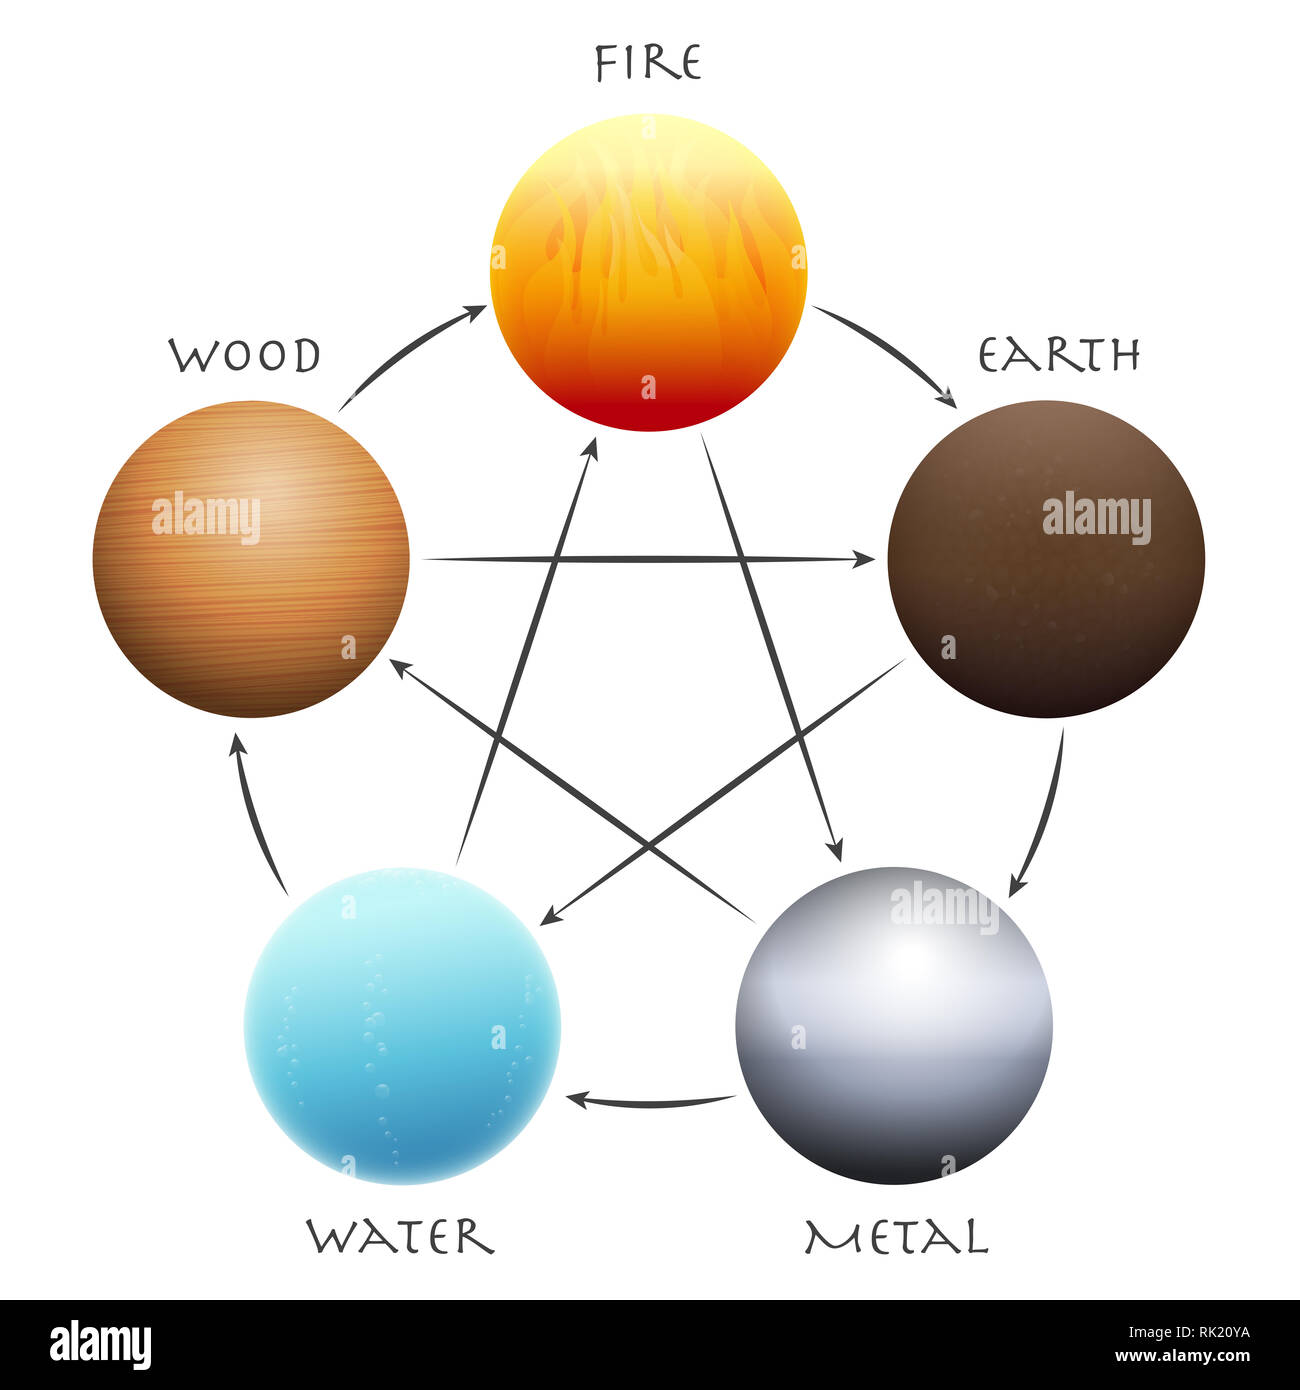 Wu Xing Kugeln. Fünf Elemente in einem Kreis angeordnet. Traditionelle chinesische Taoismus Symbole - Holz, Feuer, Erde, Metall und Wasser. Stockfoto